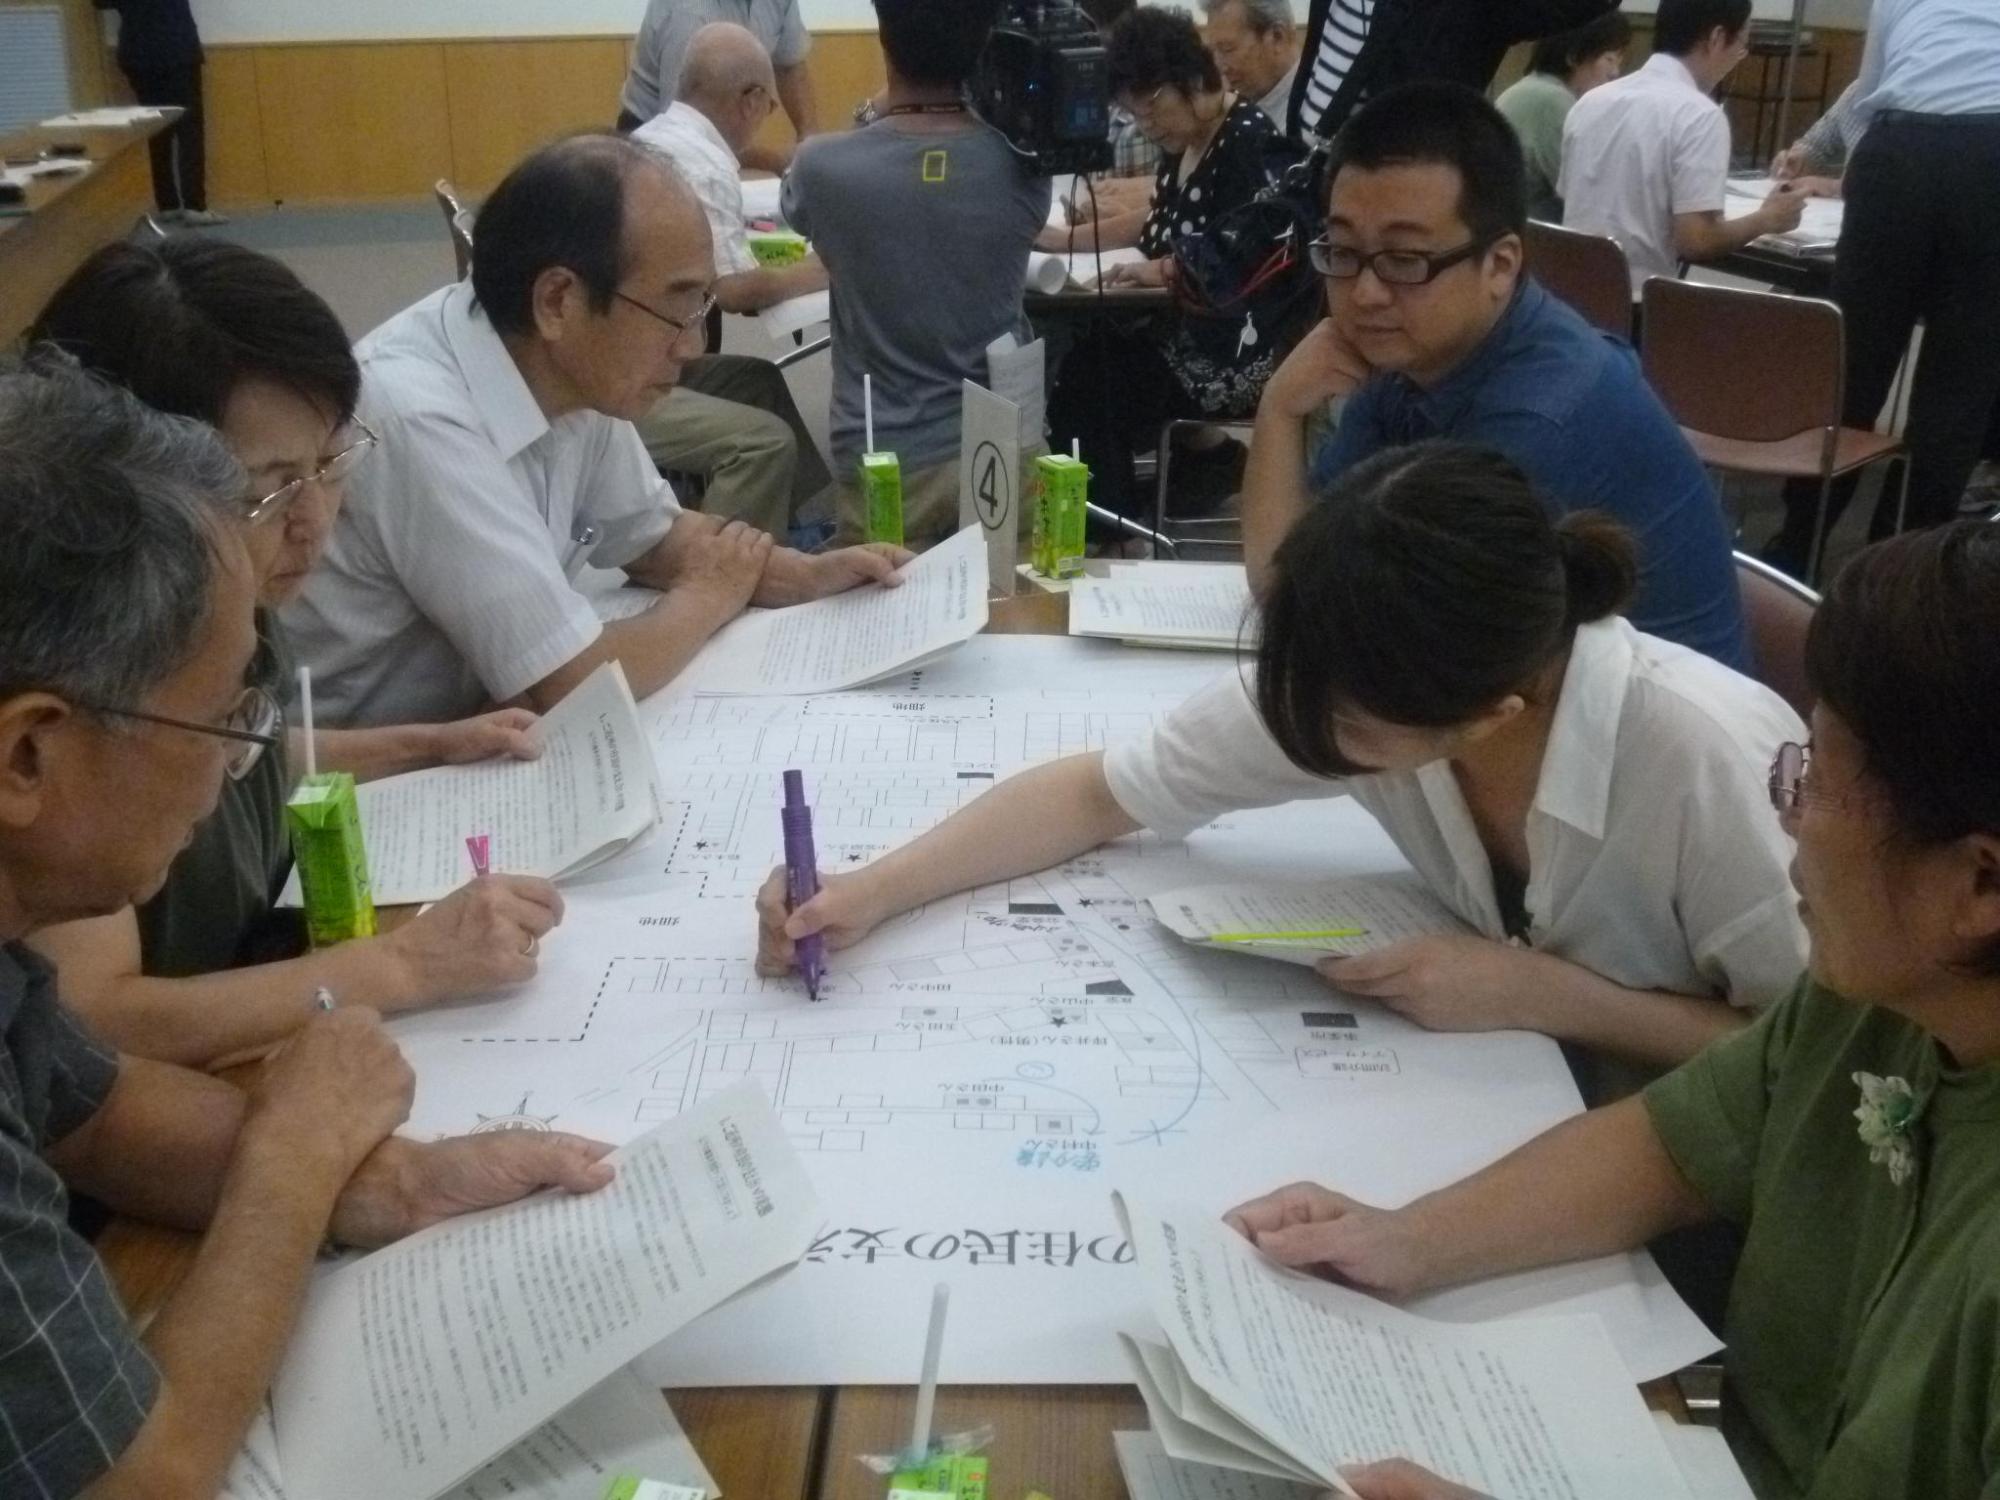 グループで話し合いが行われており、中央の女性が地図にマジックで文字を書き込んでいる写真。